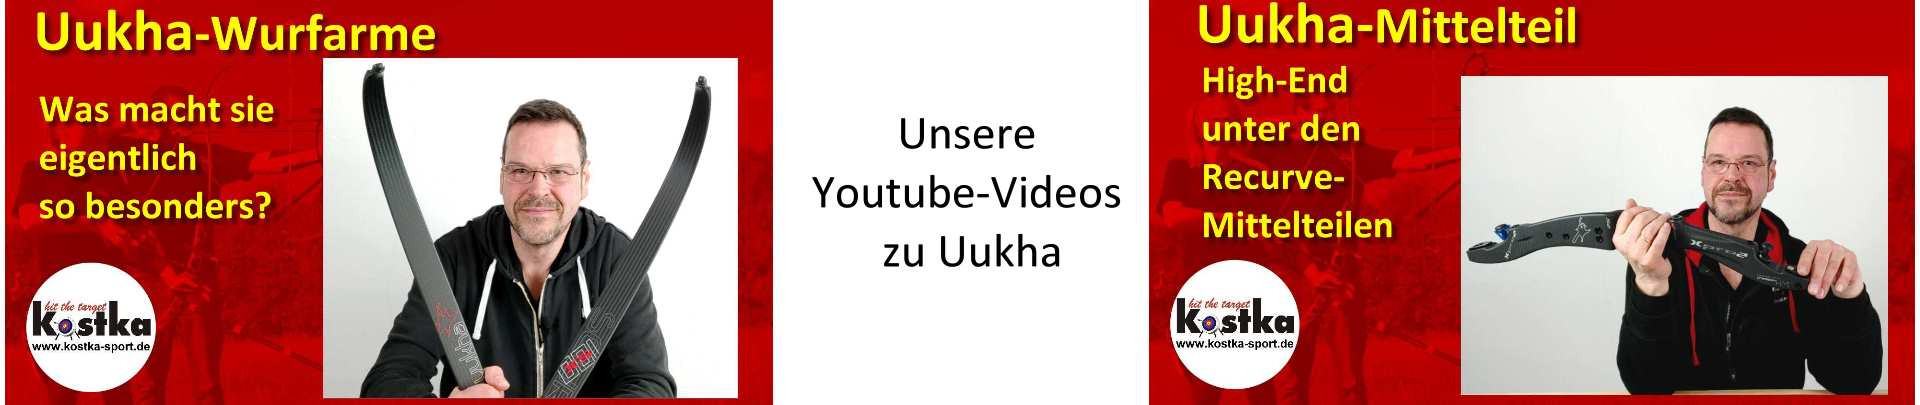 Unsere Youtube-Videos zu Uukha Wurfarmen und Mittelteilen